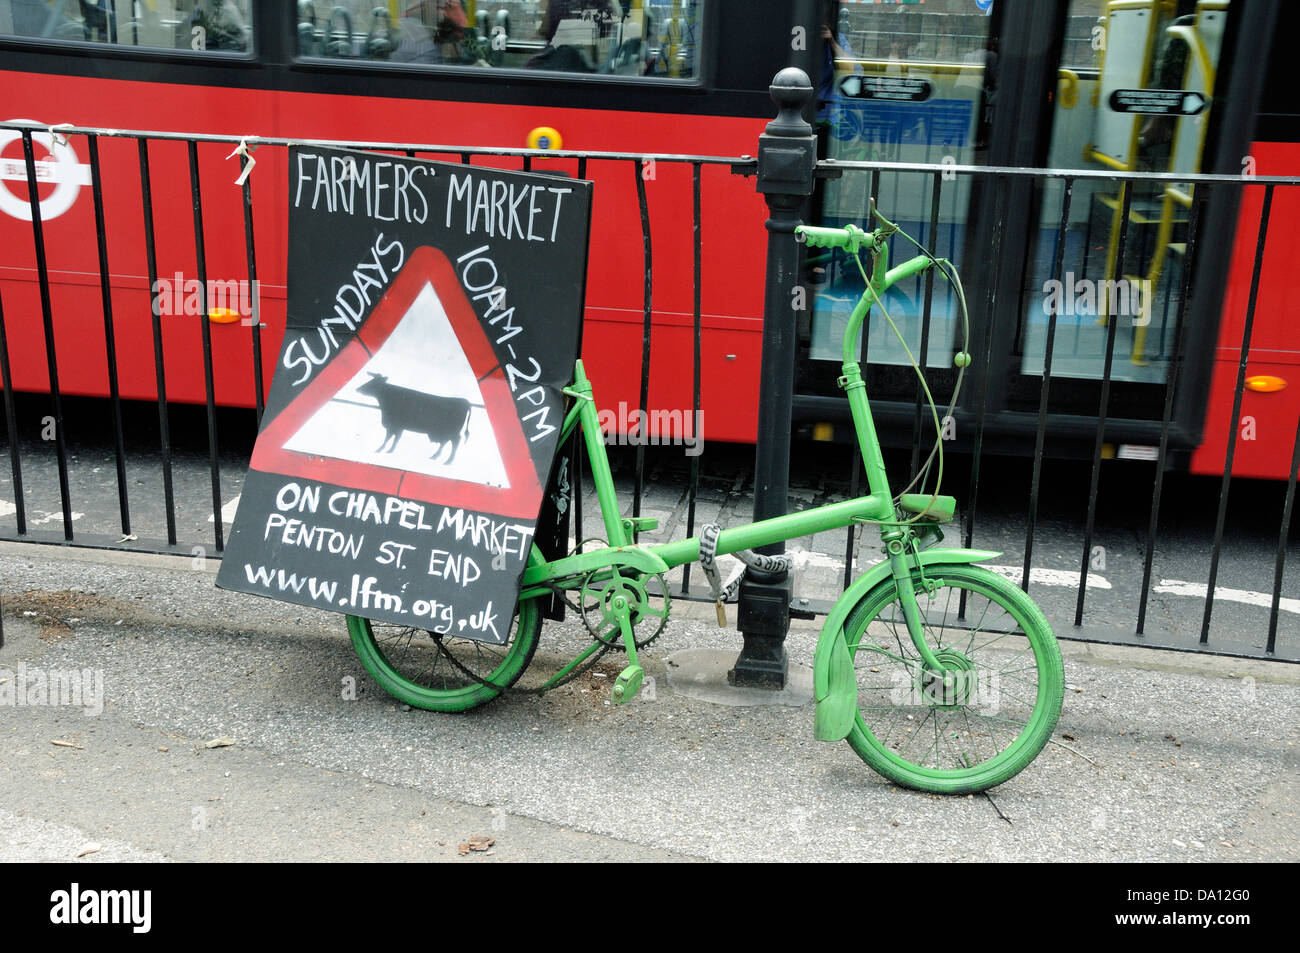 Bauernmarkt-Zeichen angebracht, Fahrrad mit Bus vorbei, London Borough of Islington, England, UK Stockfoto